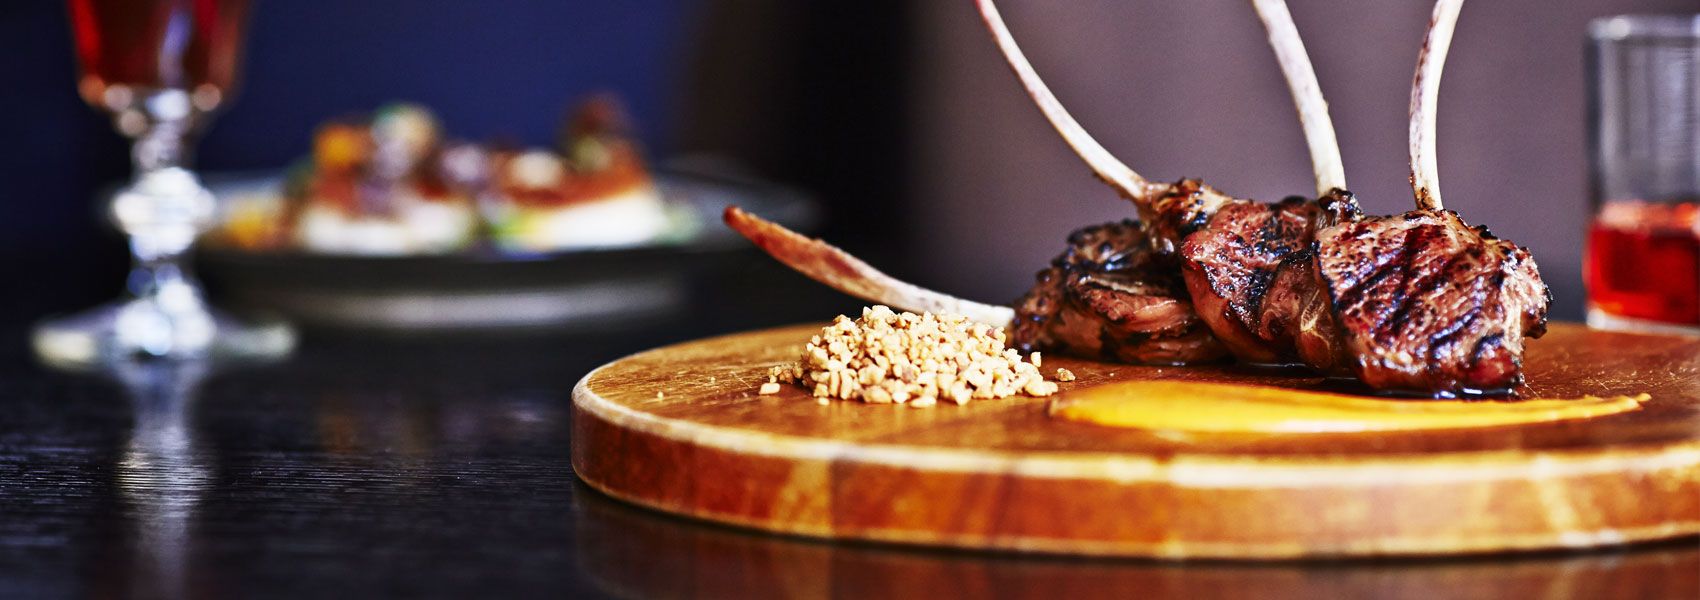 a juicy steak on a wooden cutting board